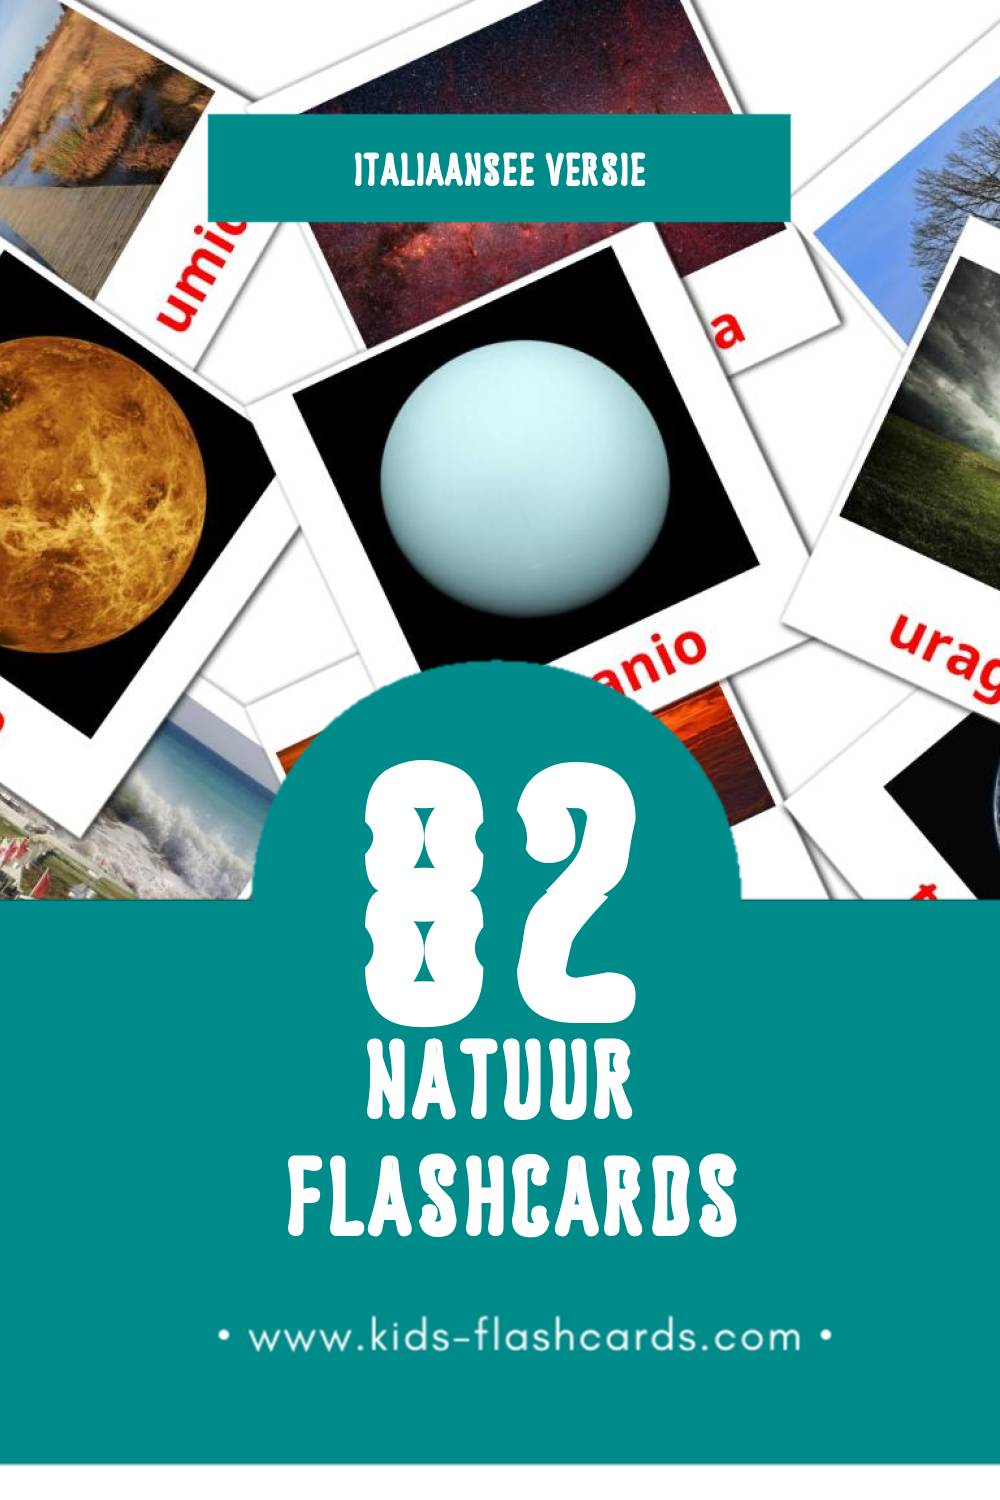 Visuele Natura Flashcards voor Kleuters (82 kaarten in het Italiaanse)